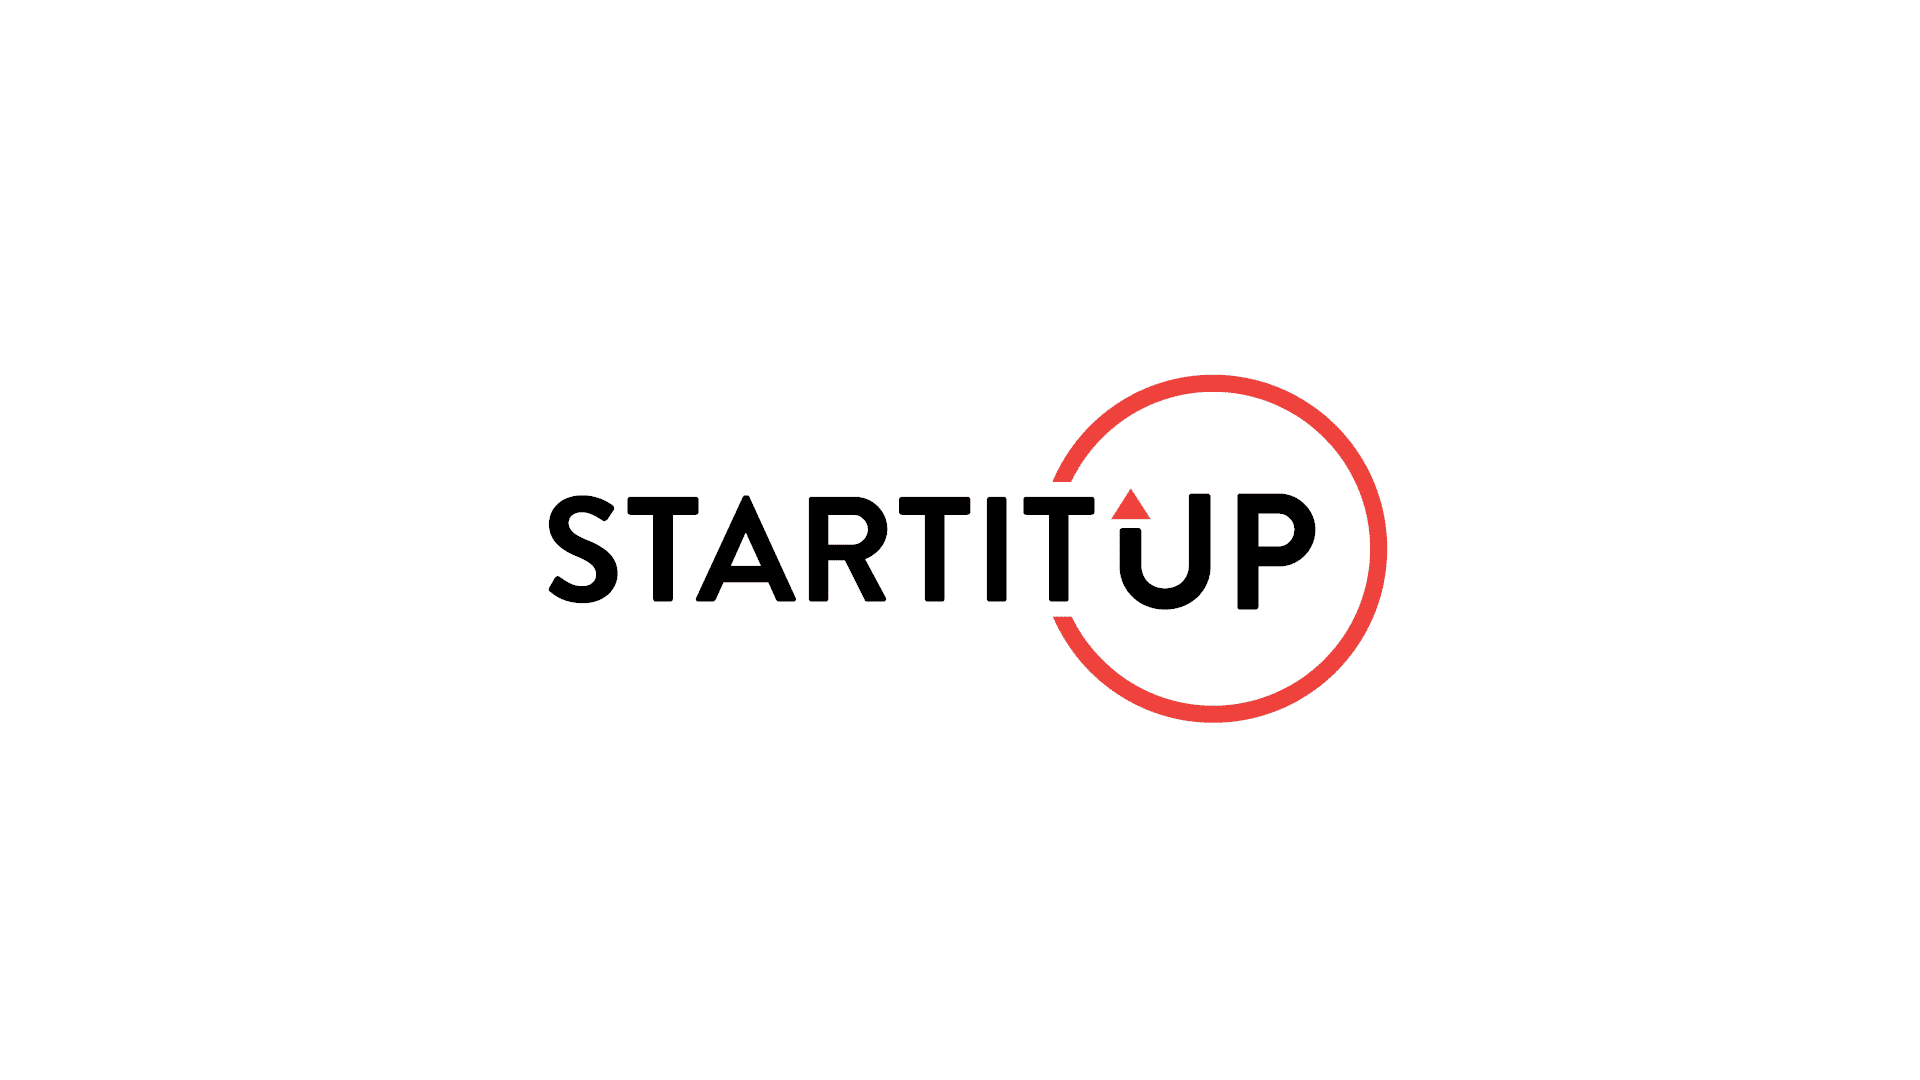 Startitup logo